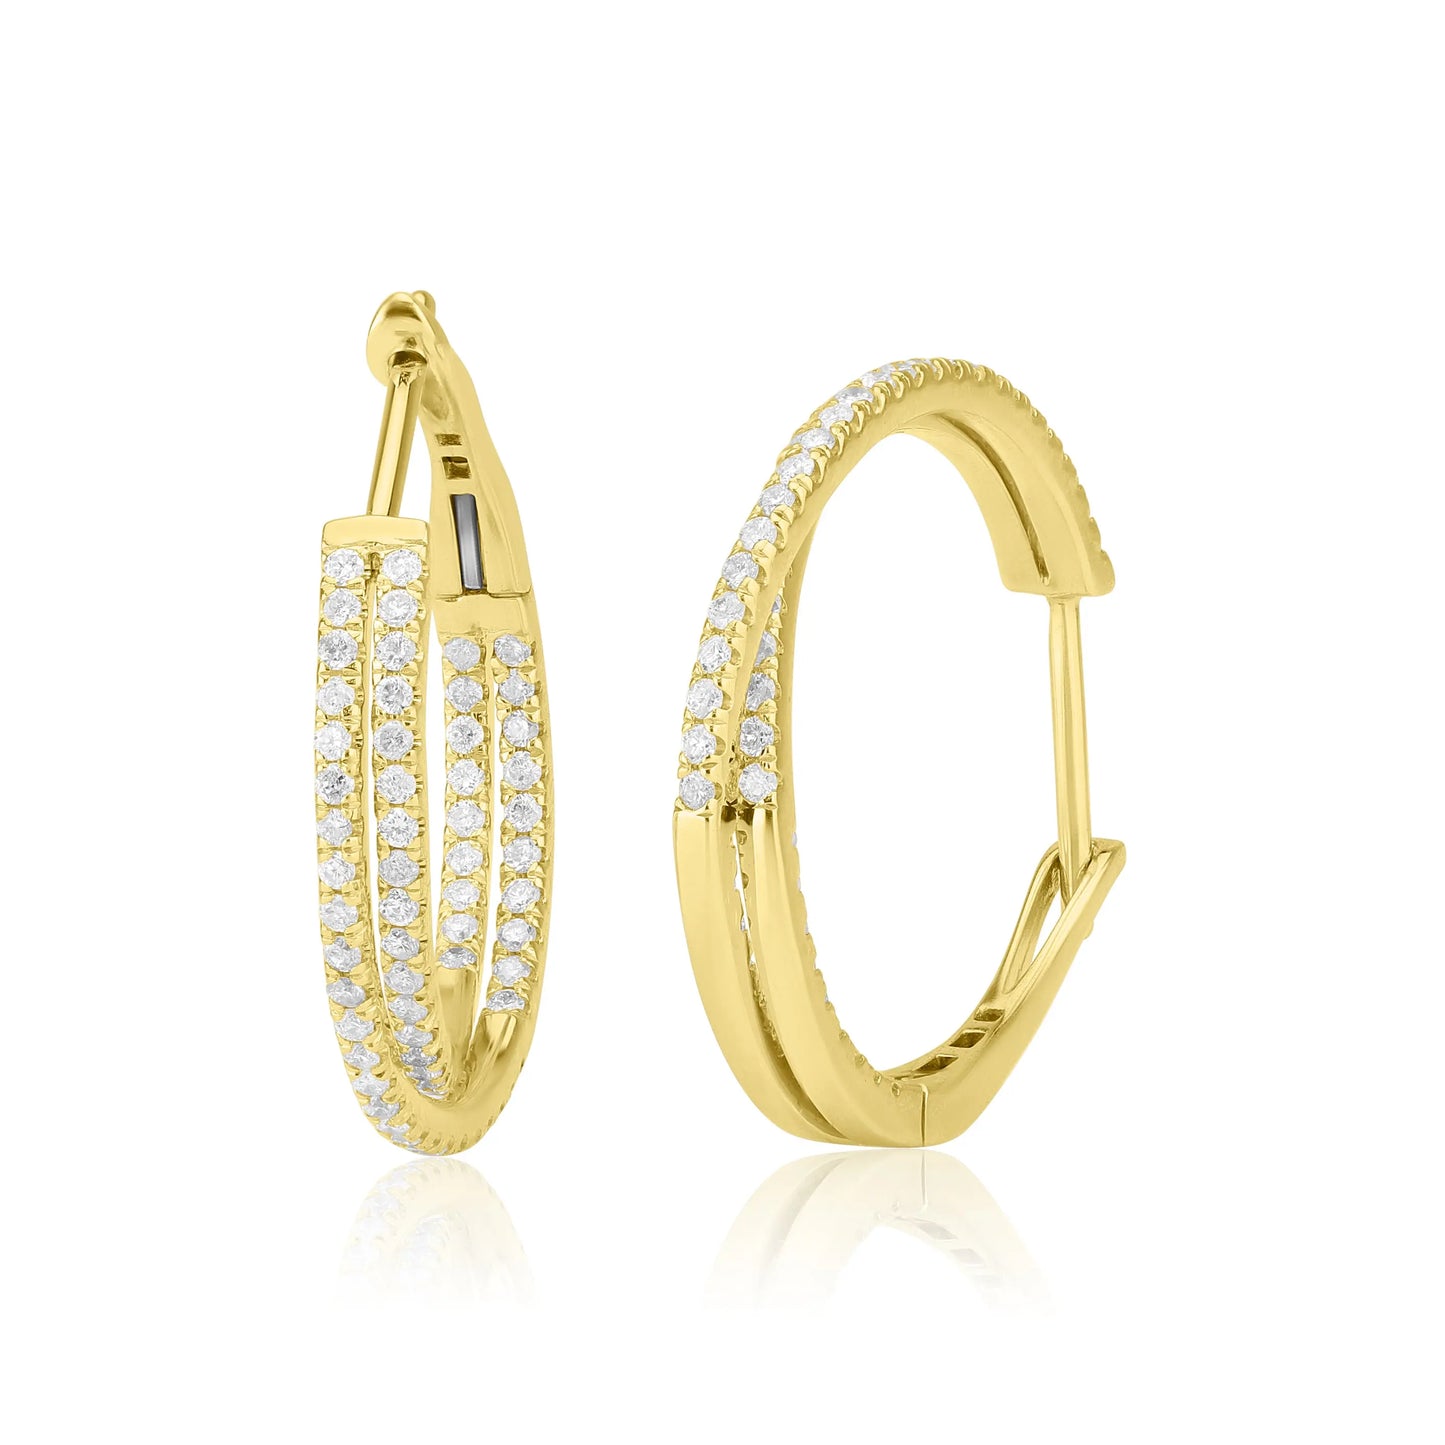 White Gold Earrings Twist Diamond Hoops Earrings dansonjewelers Danson Jewelers 